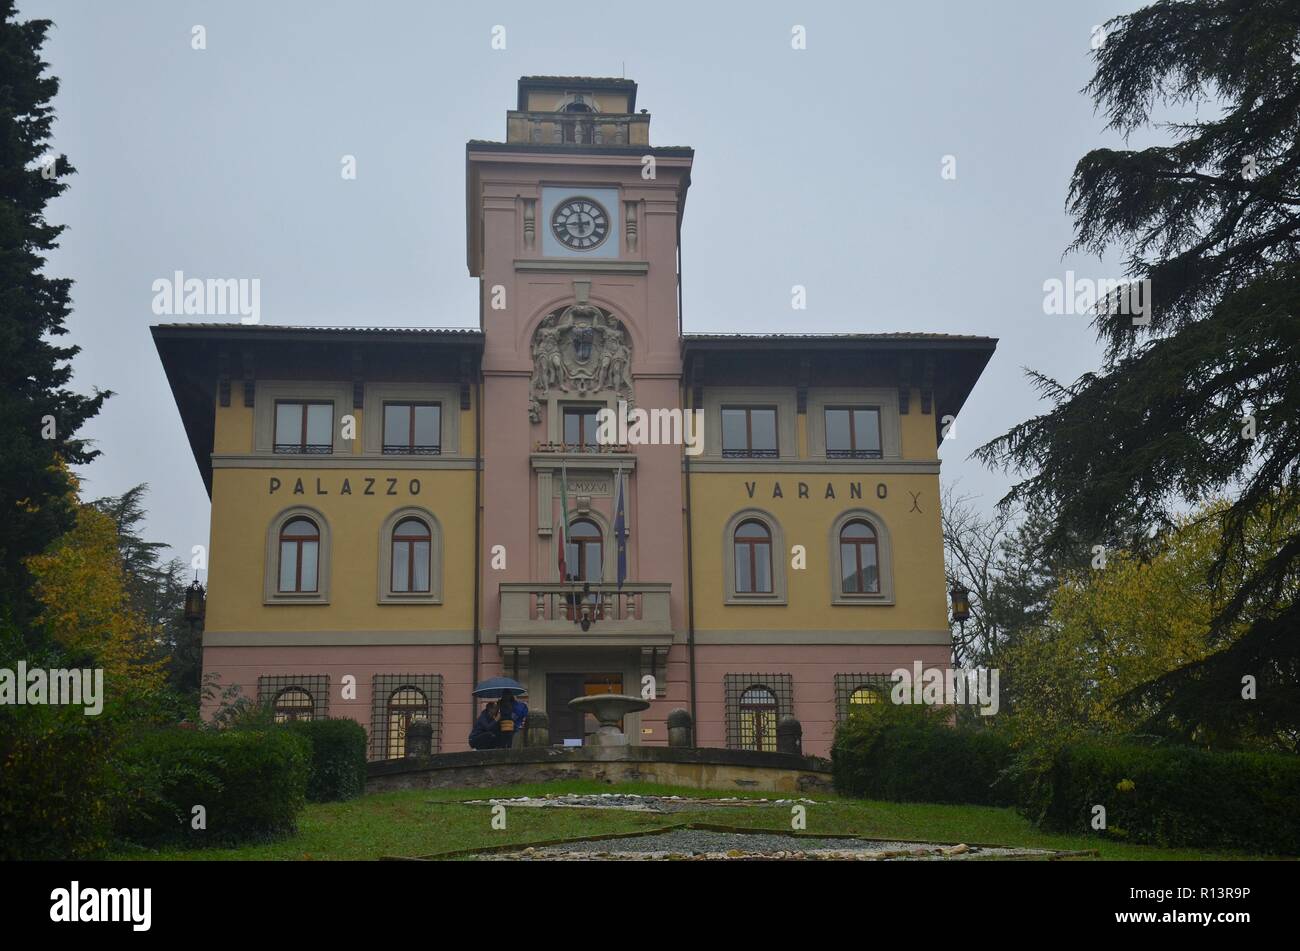 Predappio in Emilia Romagna, Italien, der Geburtsort Mussolinis, ist geprägt von faschistischer Architektur und Souvenirläden Rathaus, Palazzo Varano Foto Stock